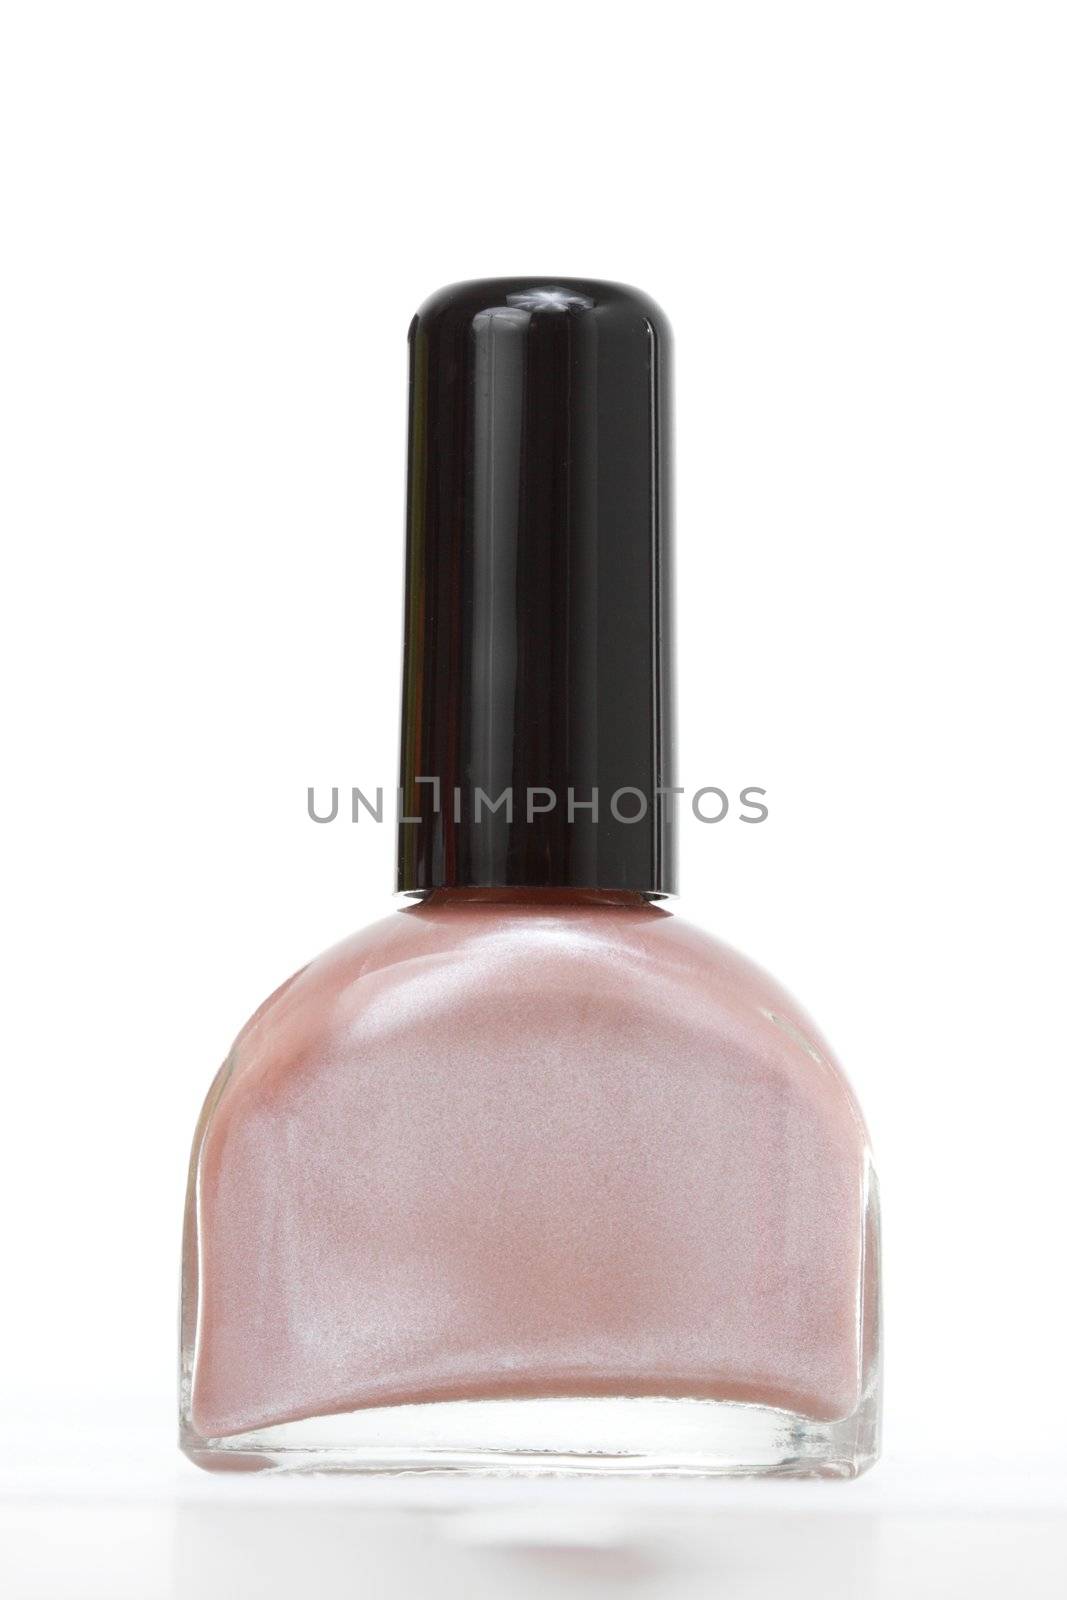 bottle of nail polish, white background